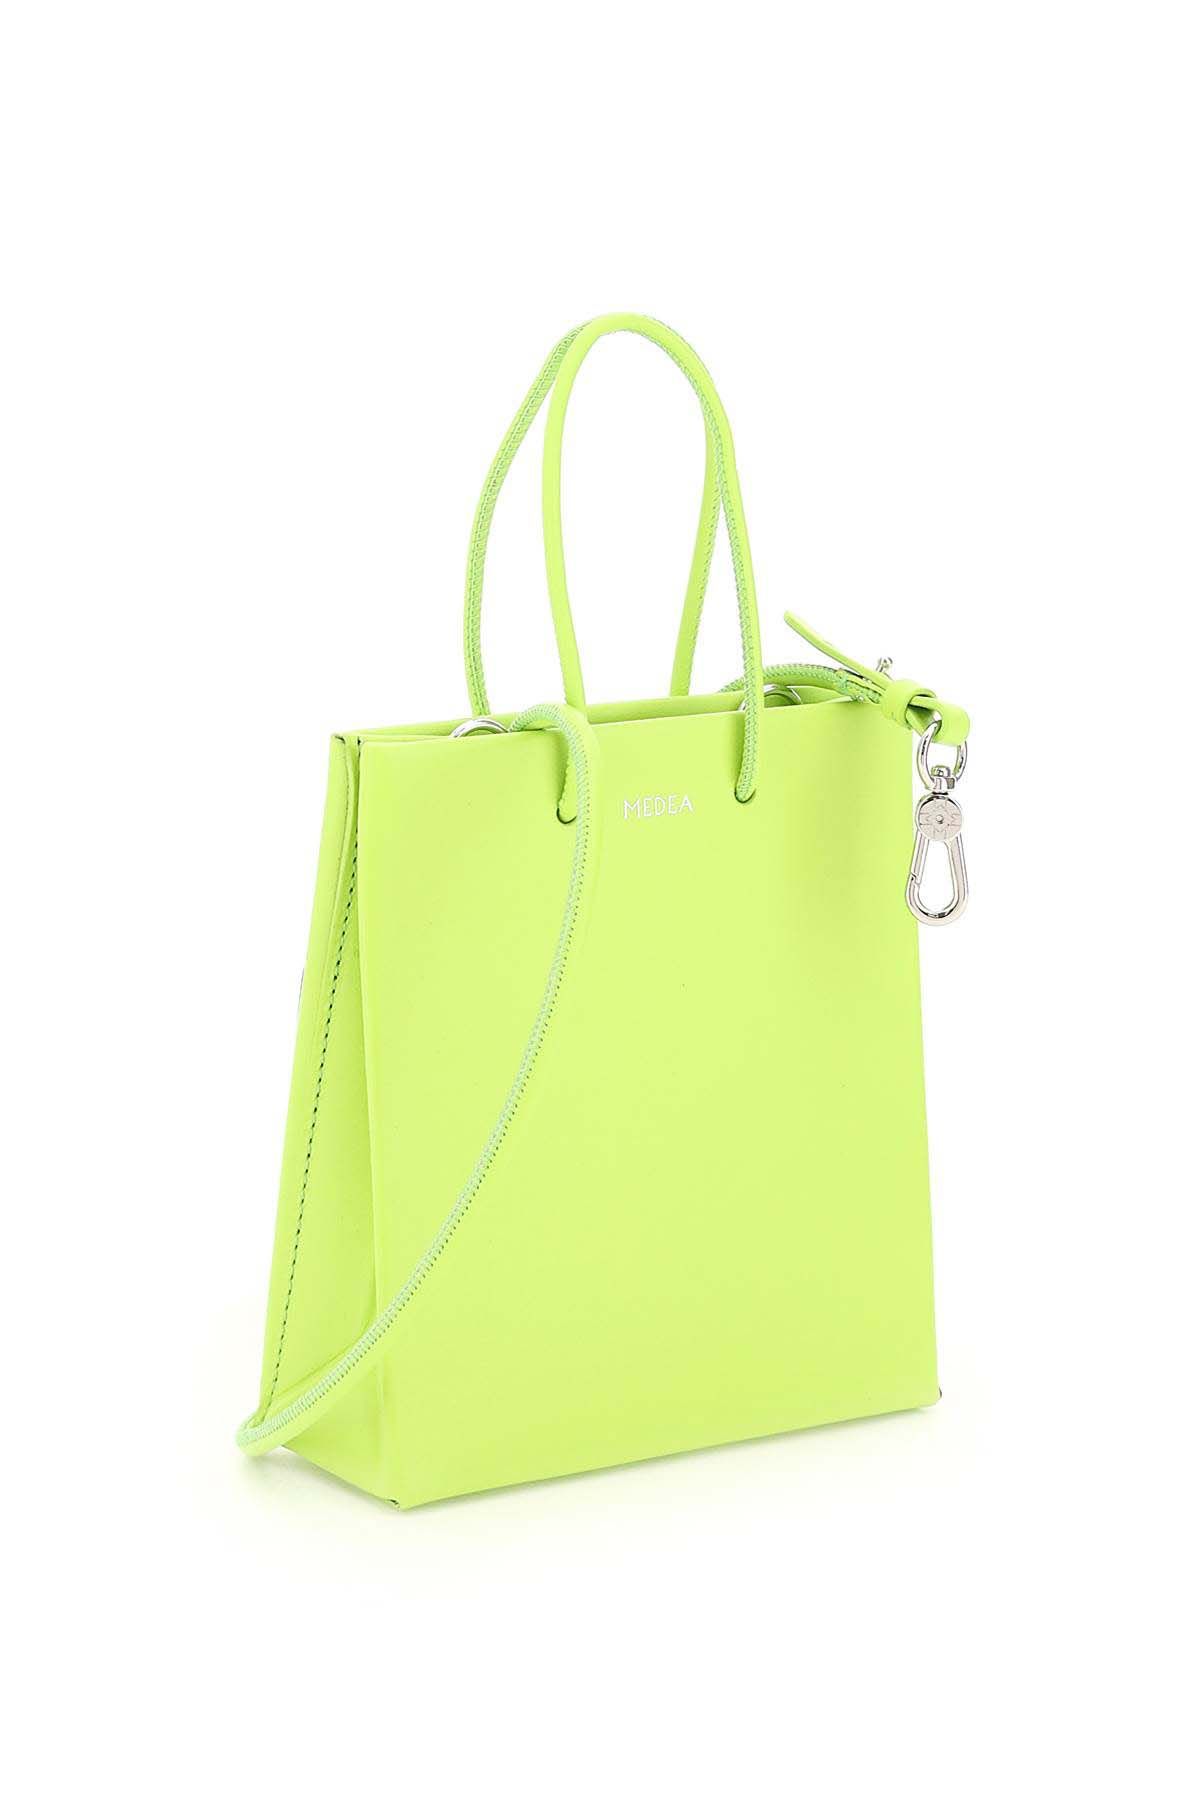 Túi MEDEA Short Bag màu xanh lá cây